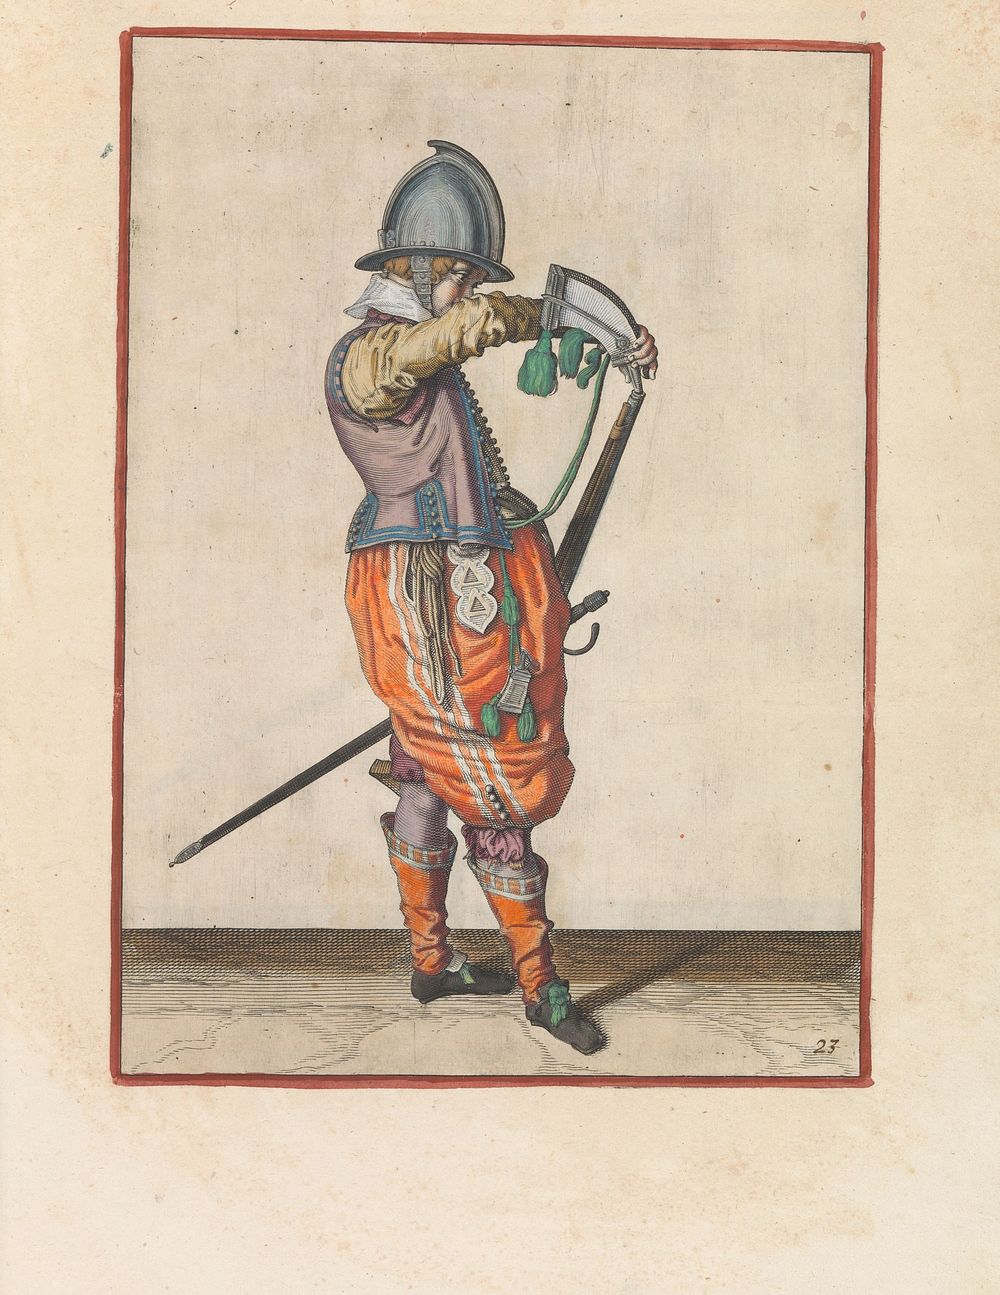 Soldaat die kruit in de loop van zijn roer giet (c. 1597 - 1607) by Jacques de Gheyn II and Jacques de Gheyn II